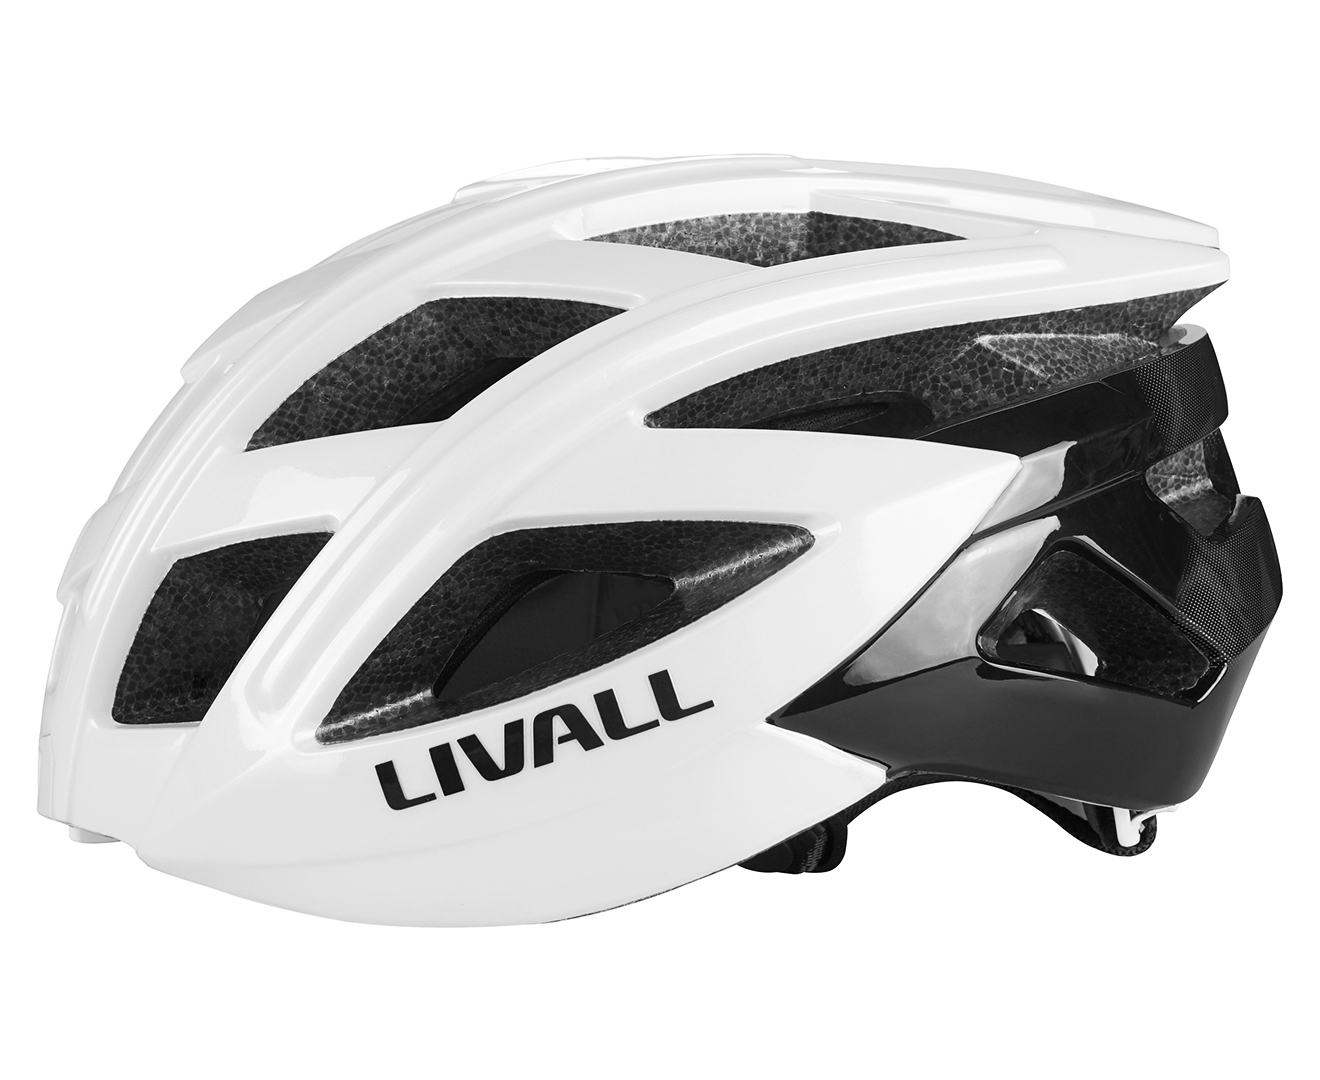 Livall Bling Road Bike Smart Helmet - Ivory White BH60SE | Catch.co.nz